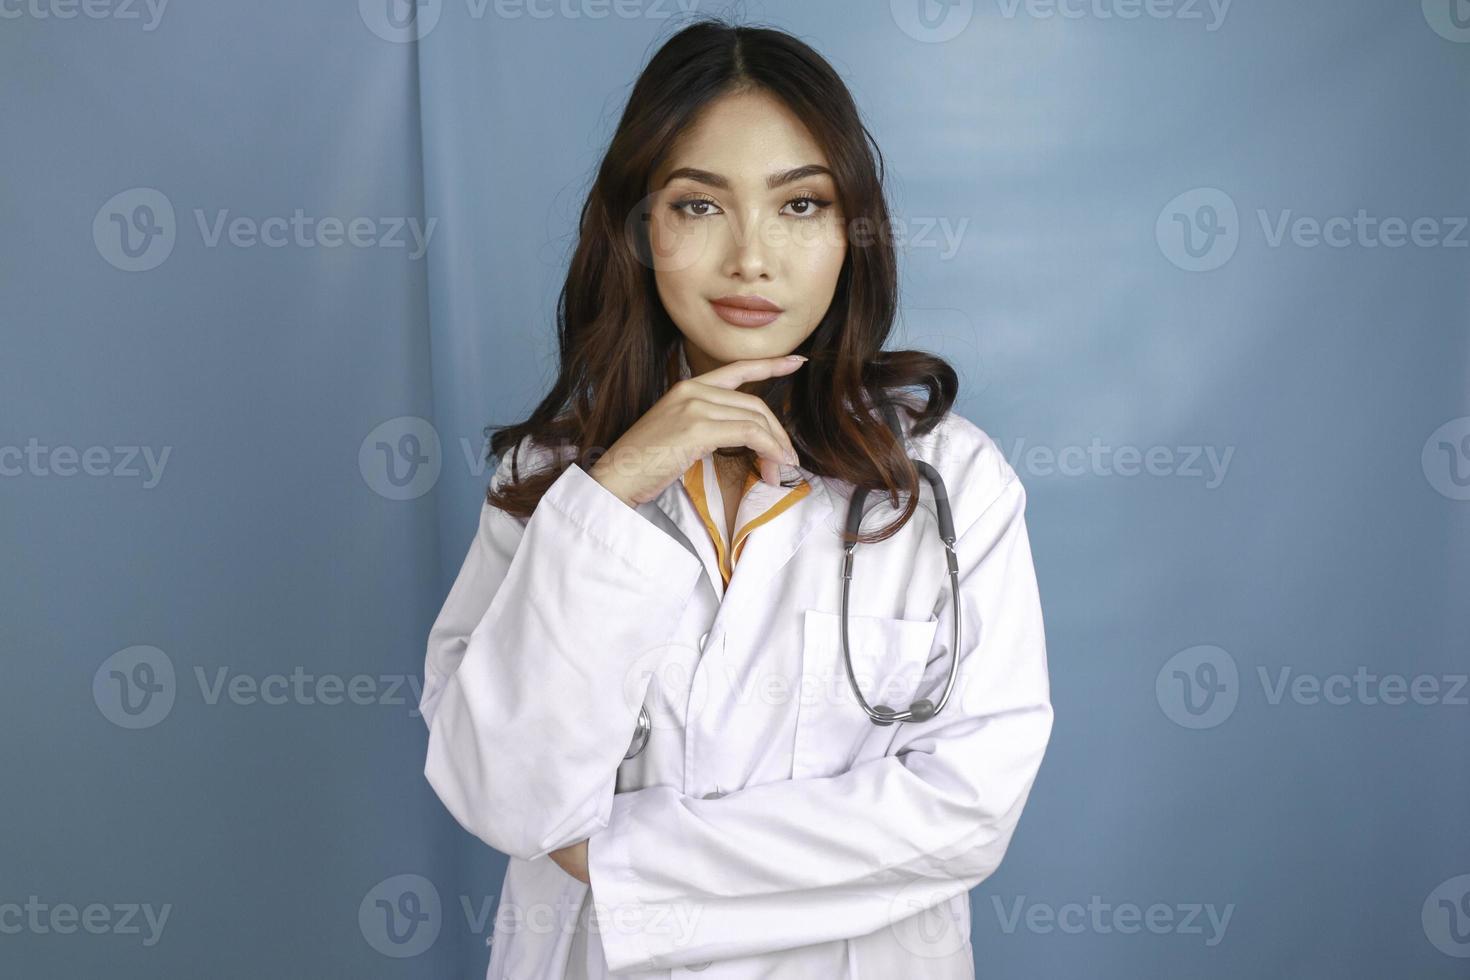 giovane donna medico su sfondo isolato pensando un'idea foto